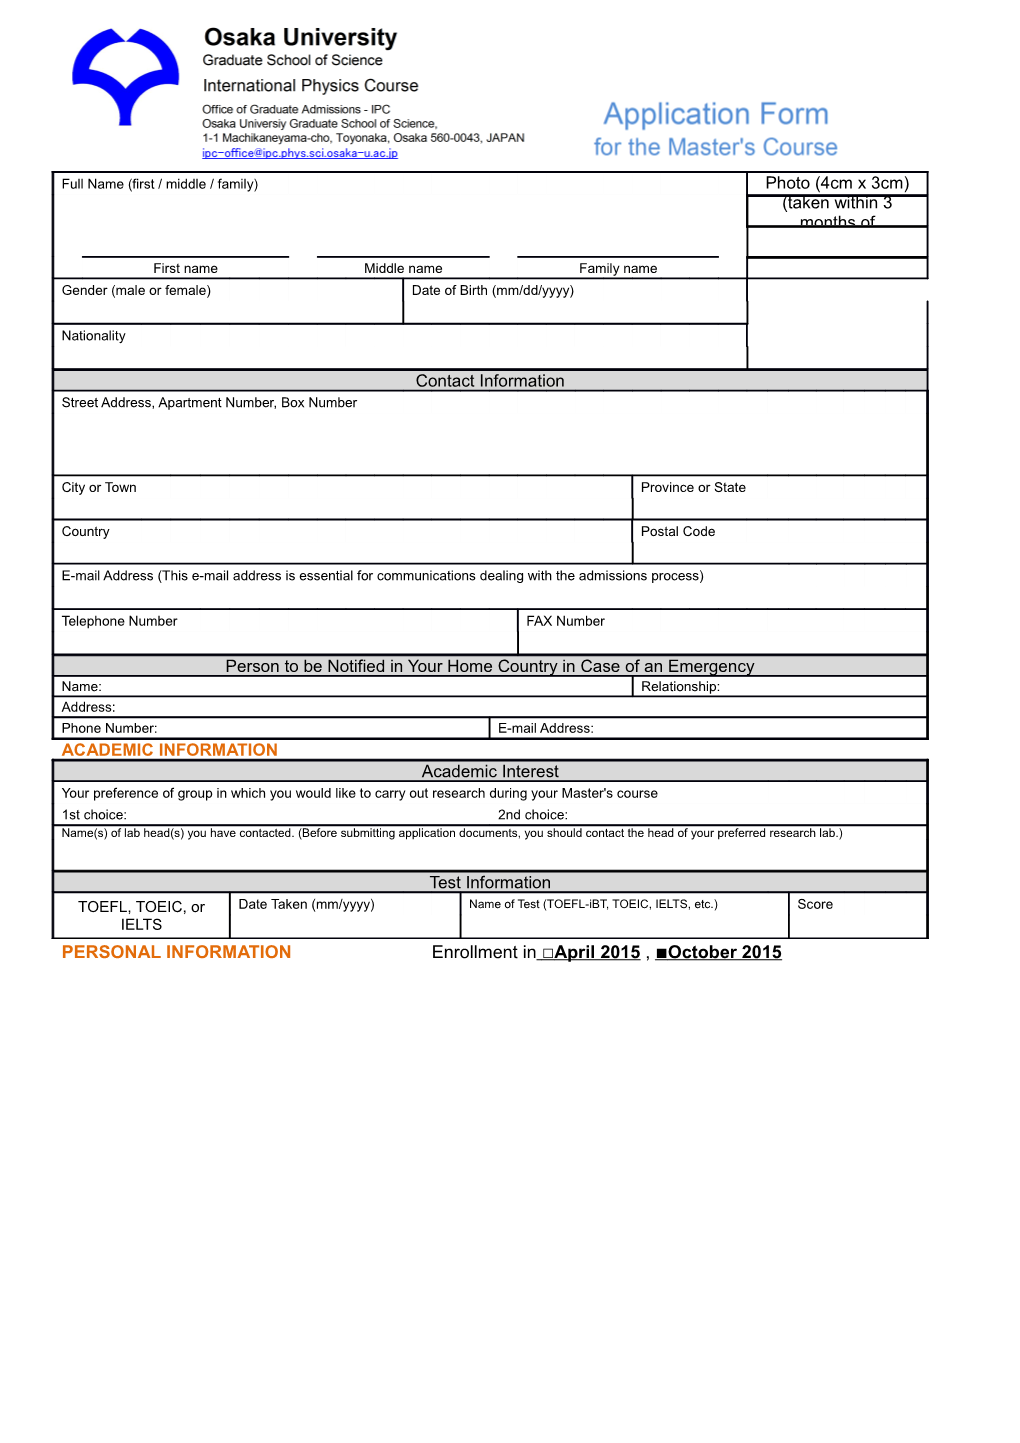 PERSONAL INFORMATION Enrollment in April 2015 , October 2015